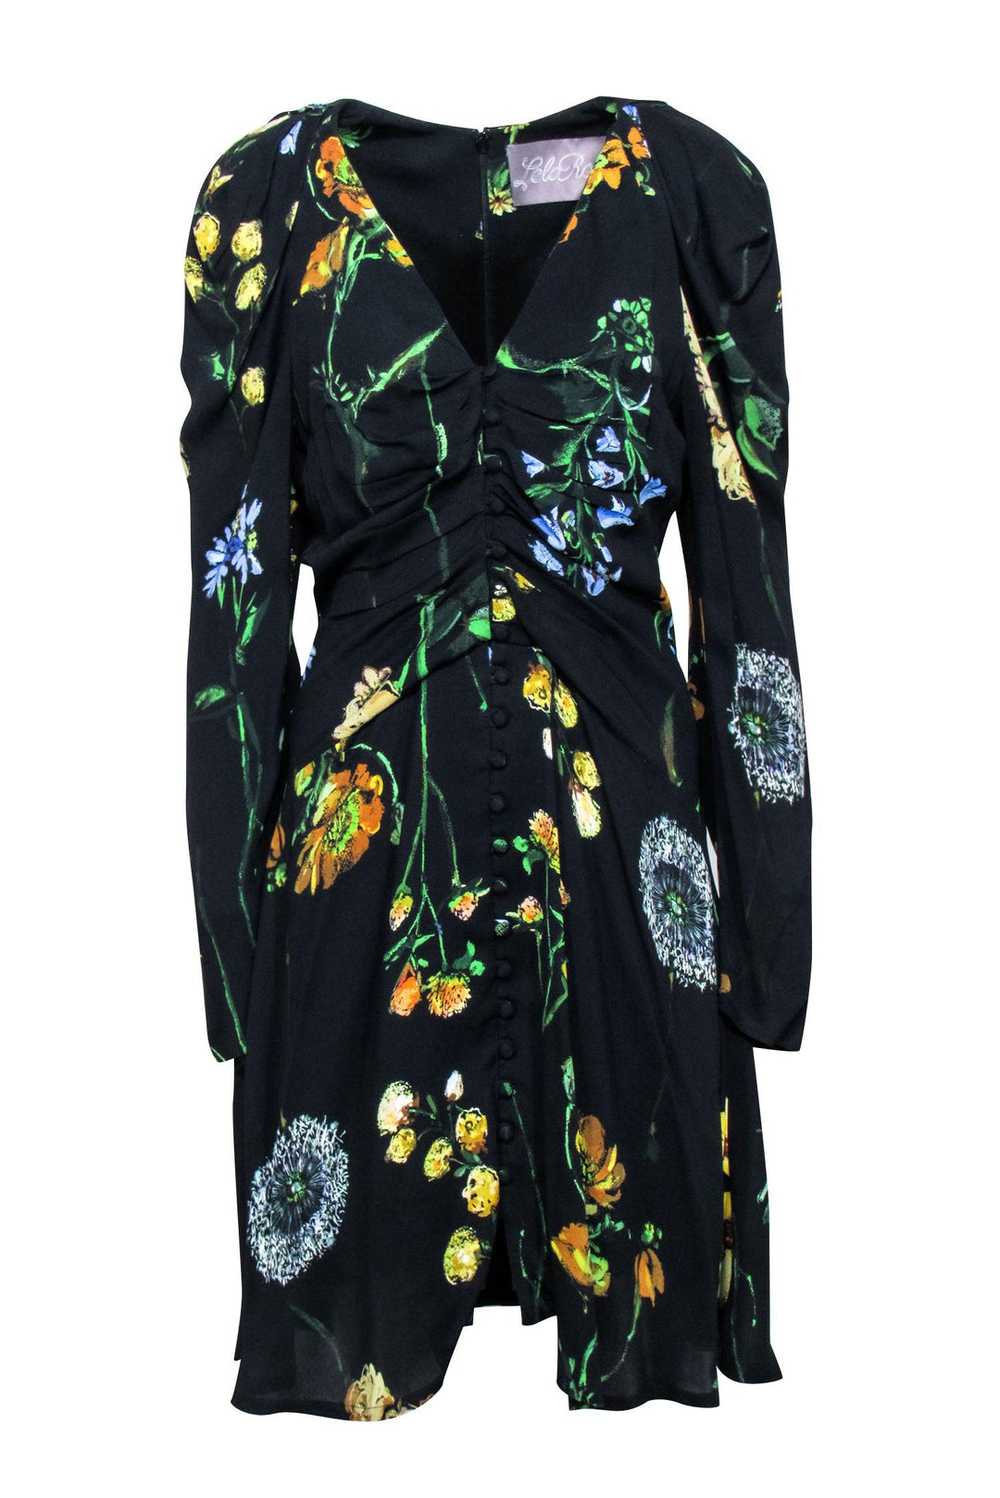 Lela Rose - Black & Multi Color Floral Print Dres… - image 1